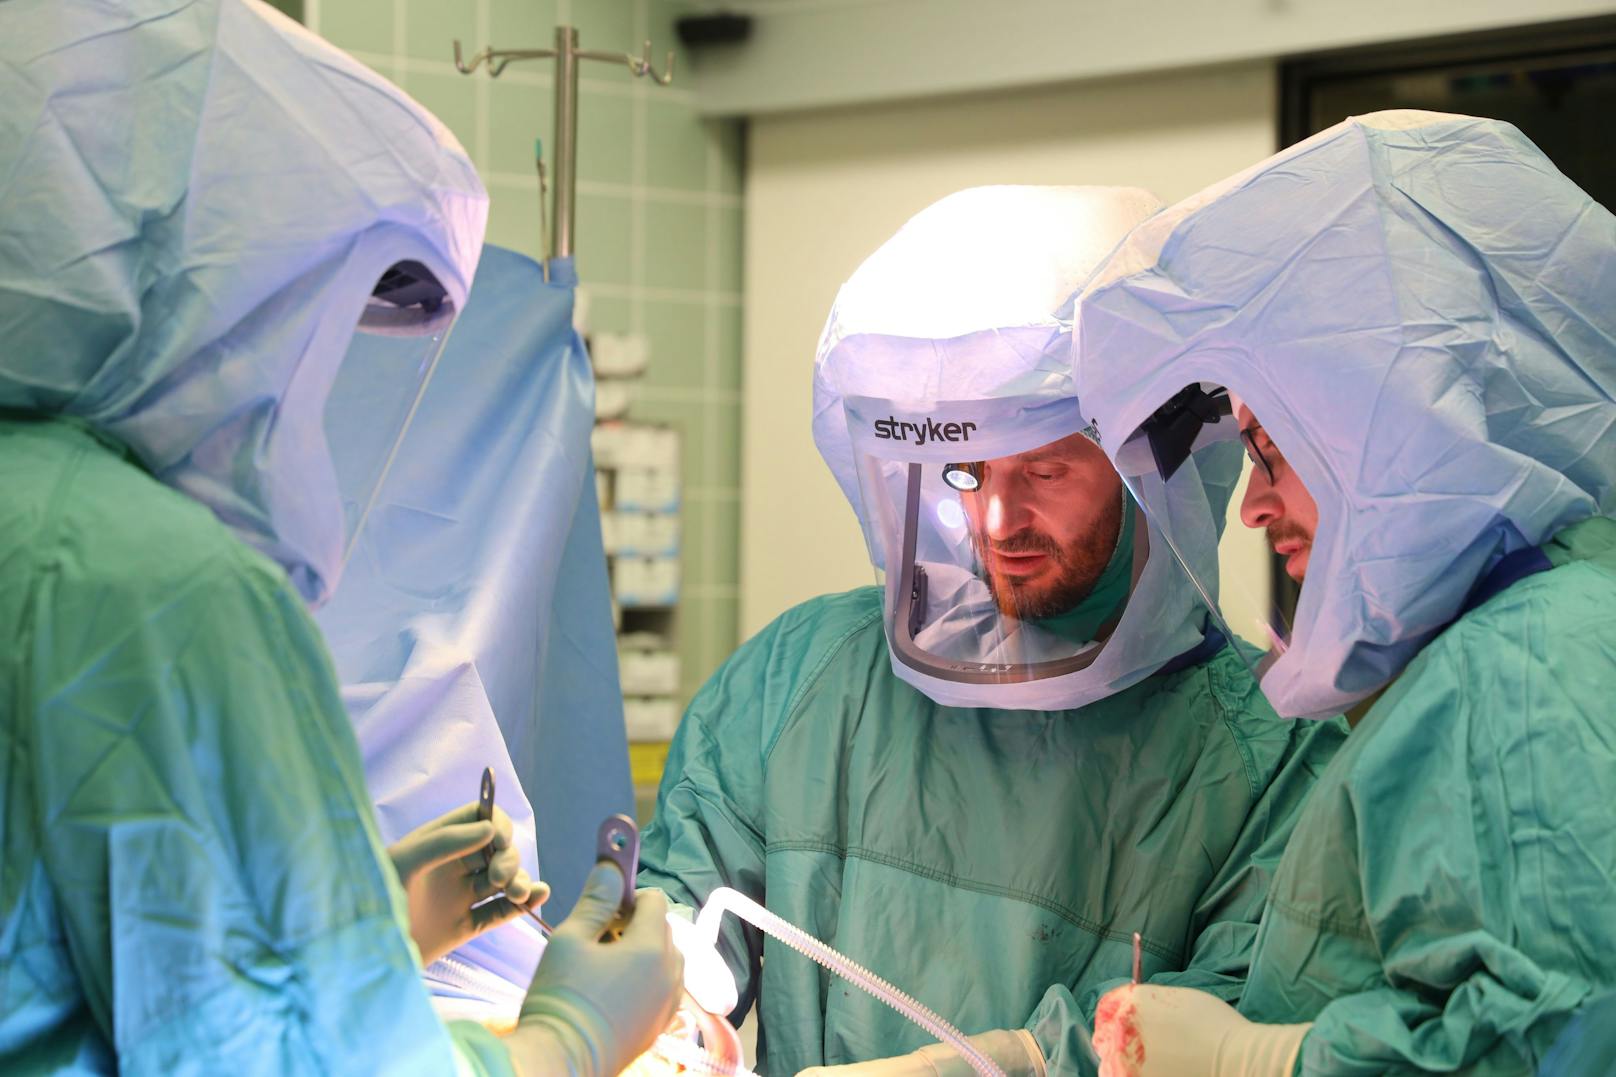 Einsatz der Operations-Helme während einer Operation